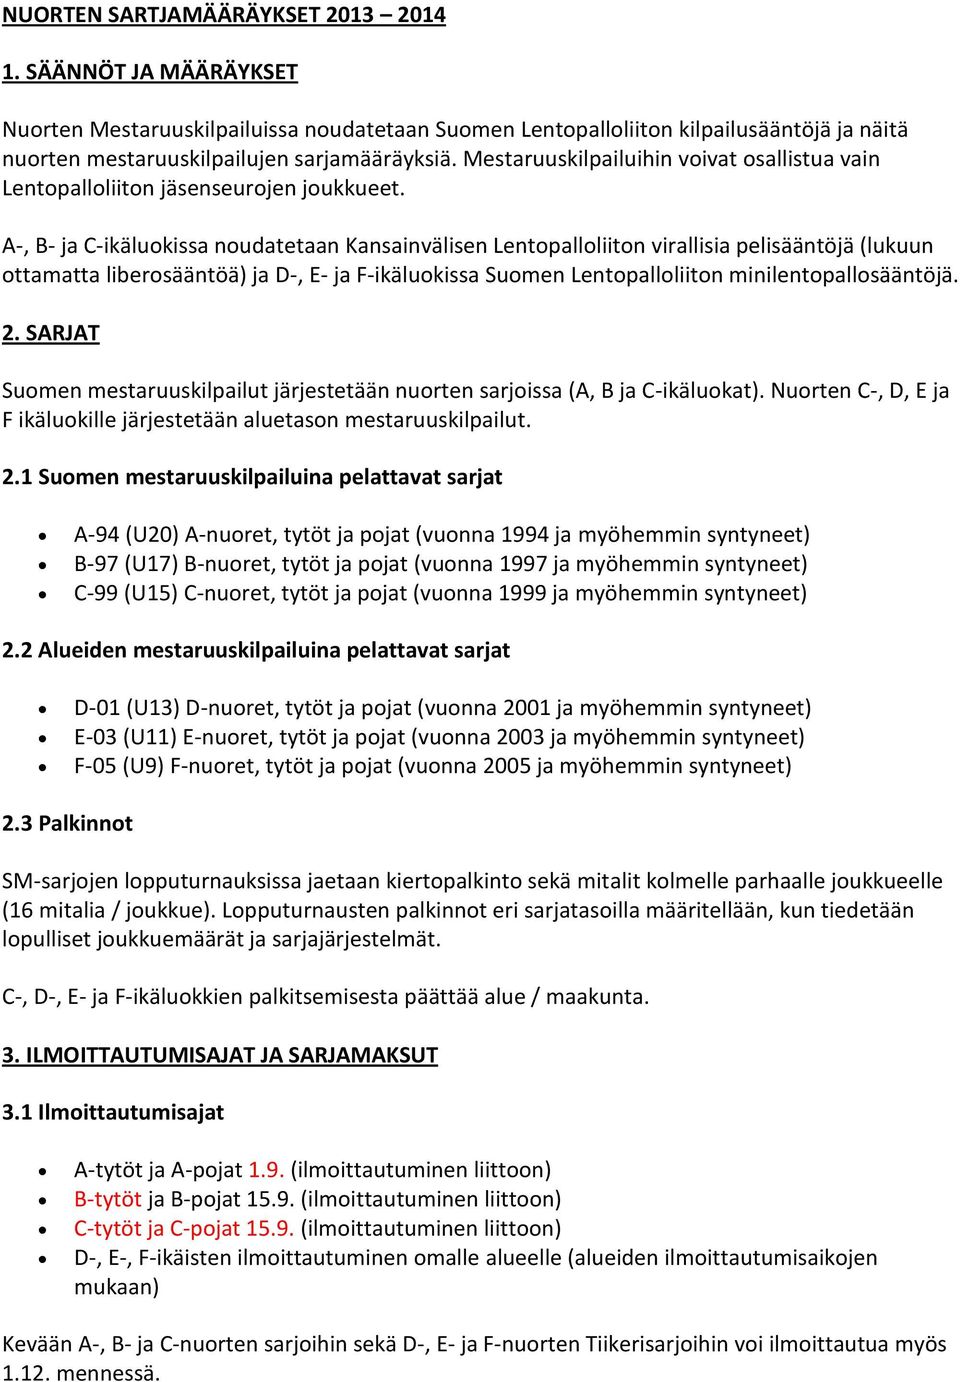 A-, B- ja C-ikäluokissa noudatetaan Kansainvälisen Lentopalloliiton virallisia pelisääntöjä (lukuun ottamatta liberosääntöä) ja D-, E- ja F-ikäluokissa Suomen Lentopalloliiton minilentopallosääntöjä.